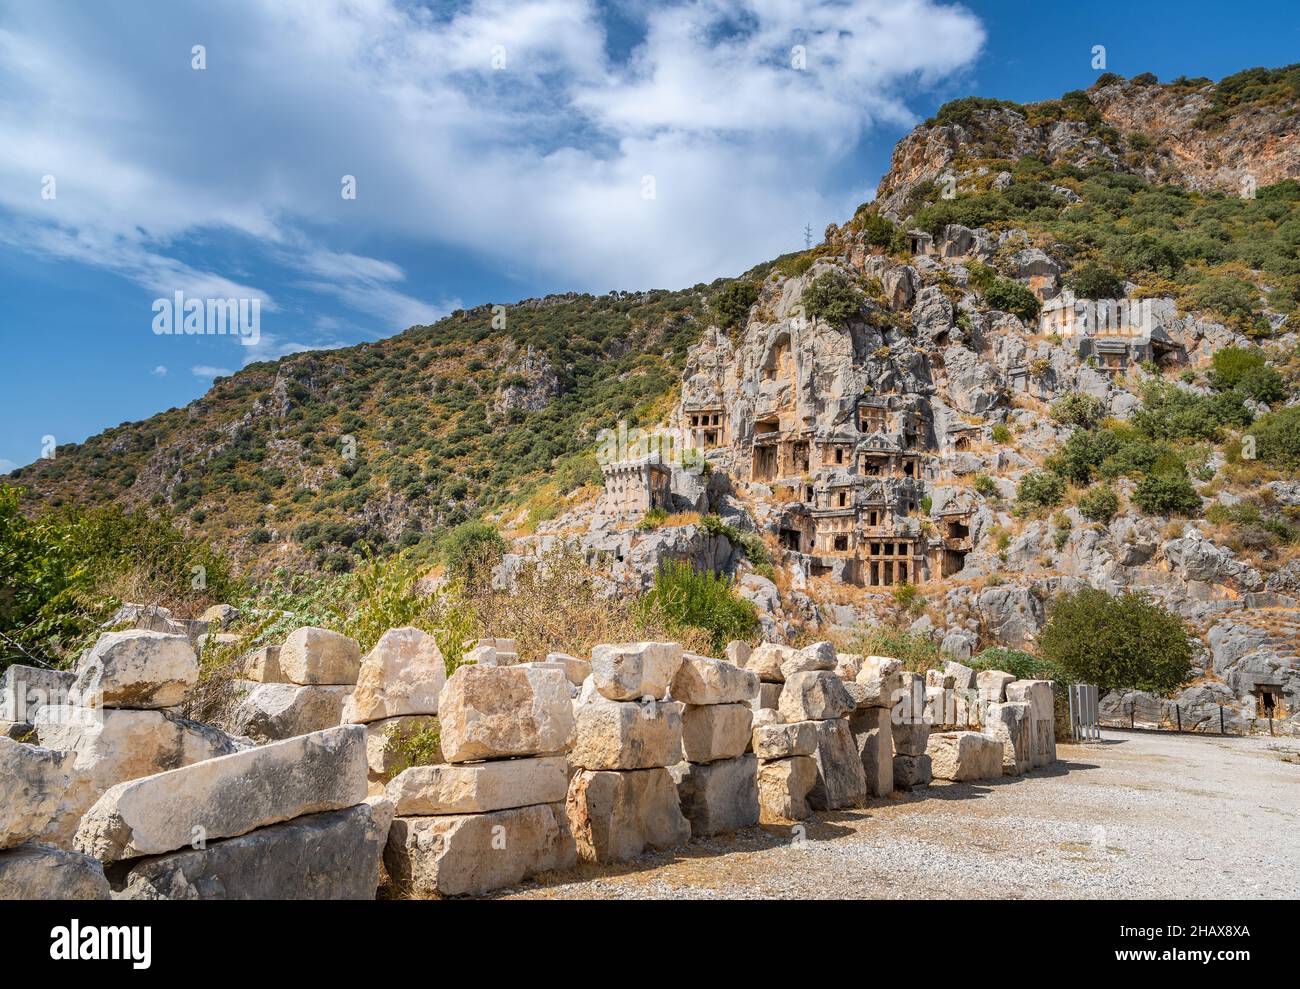 Tumbas cortadas en roca en la antigua ciudad de Myra, Turquía. Foto de stock